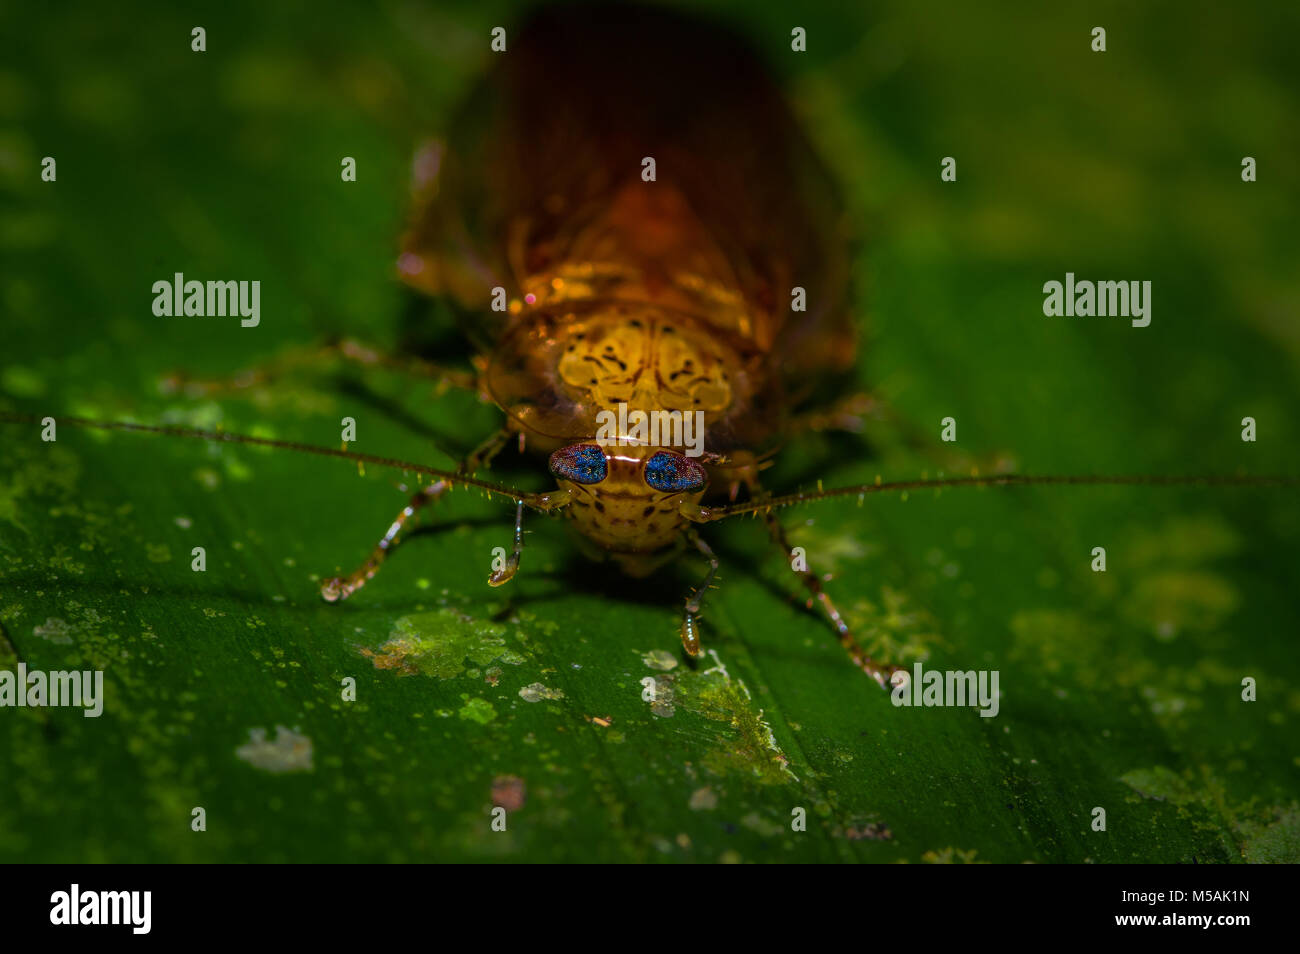 Blattodea immagini e fotografie stock ad alta risoluzione - Alamy